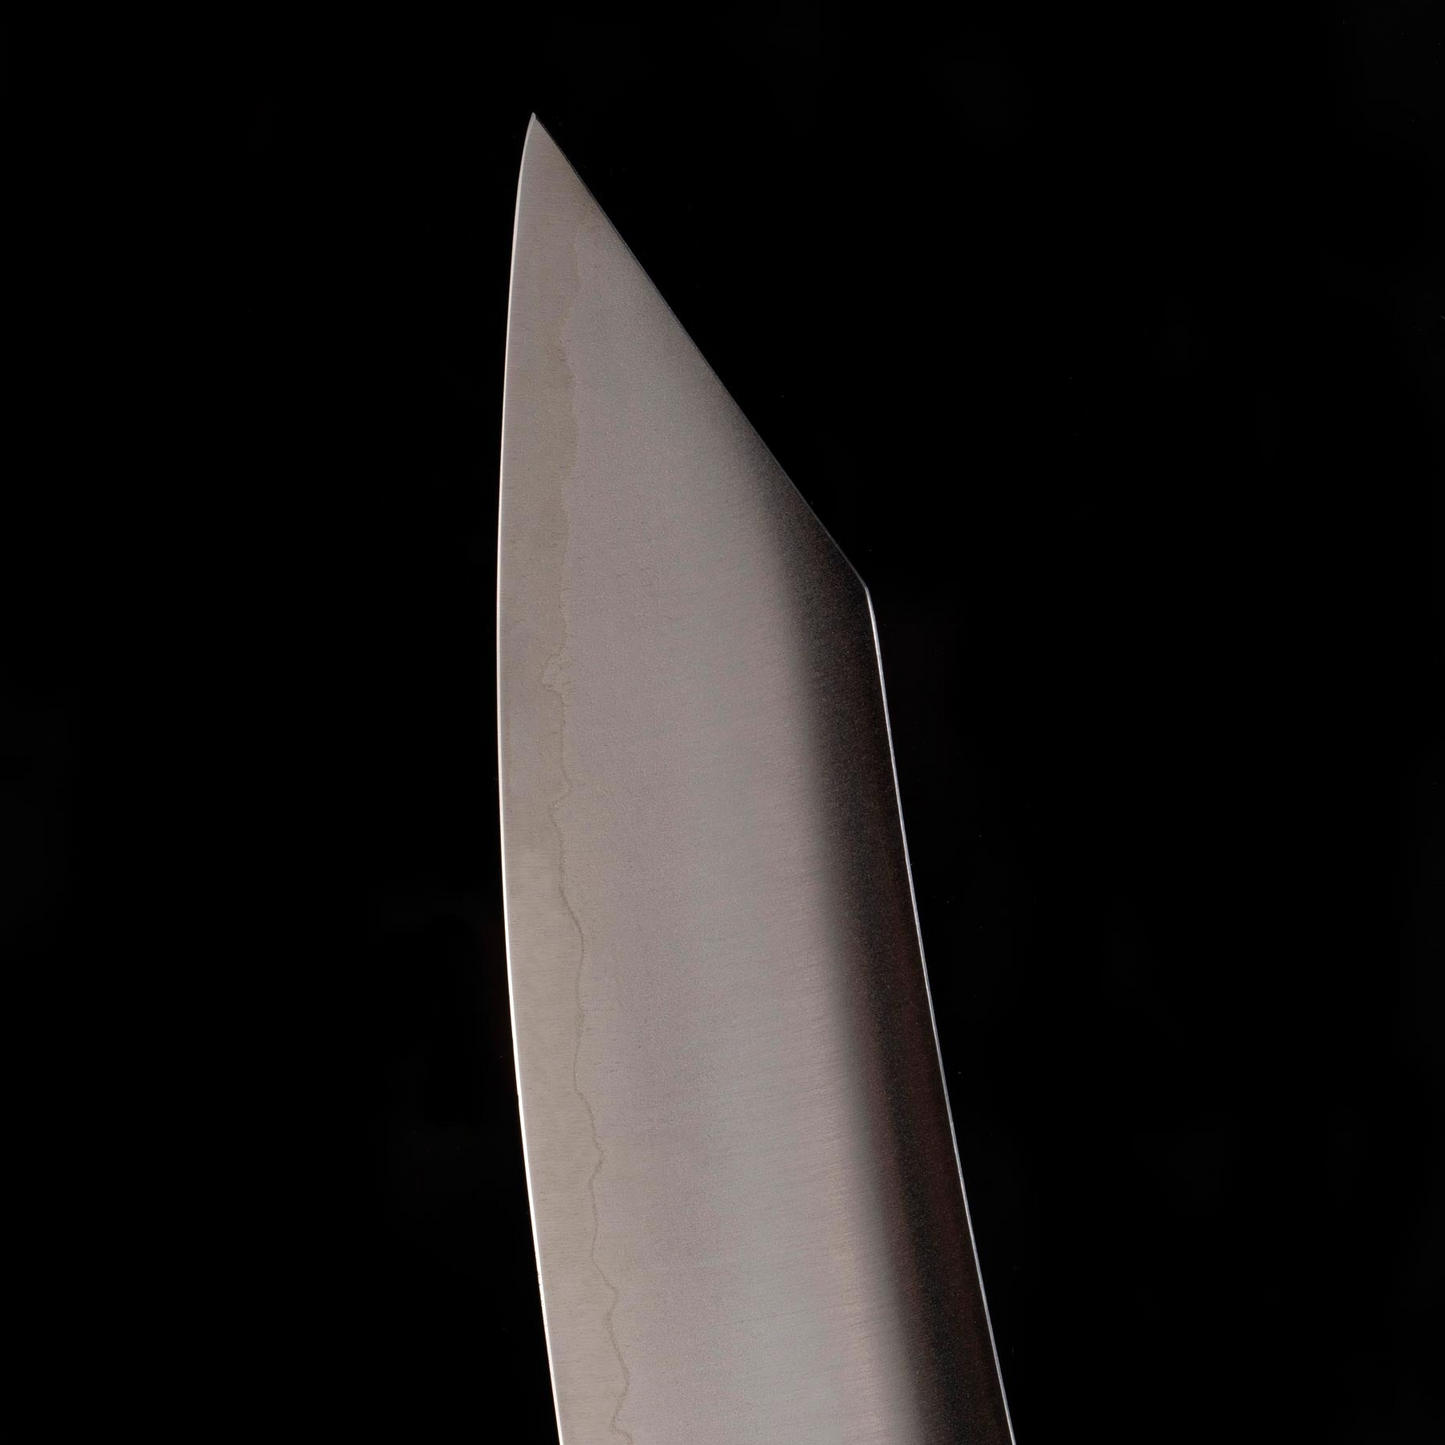 Kawashima - 10 Inch Slicer